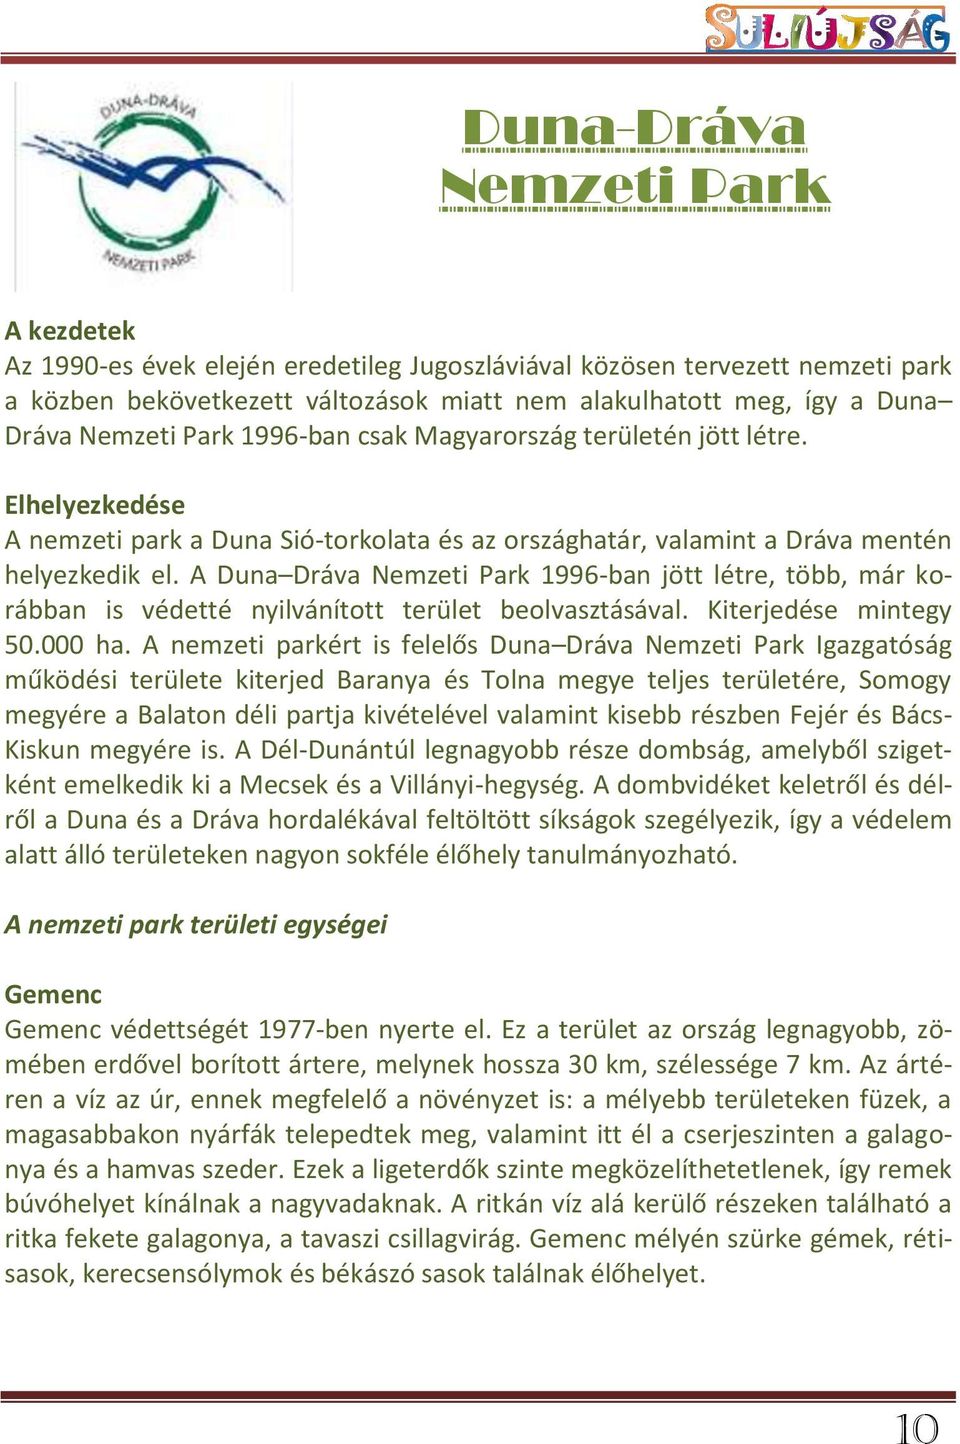 A Duna Dráva Nemzeti Park 1996-ban jött létre, több, már korábban is védetté nyilvánított terület beolvasztásával. Kiterjedése mintegy 50.000 ha.